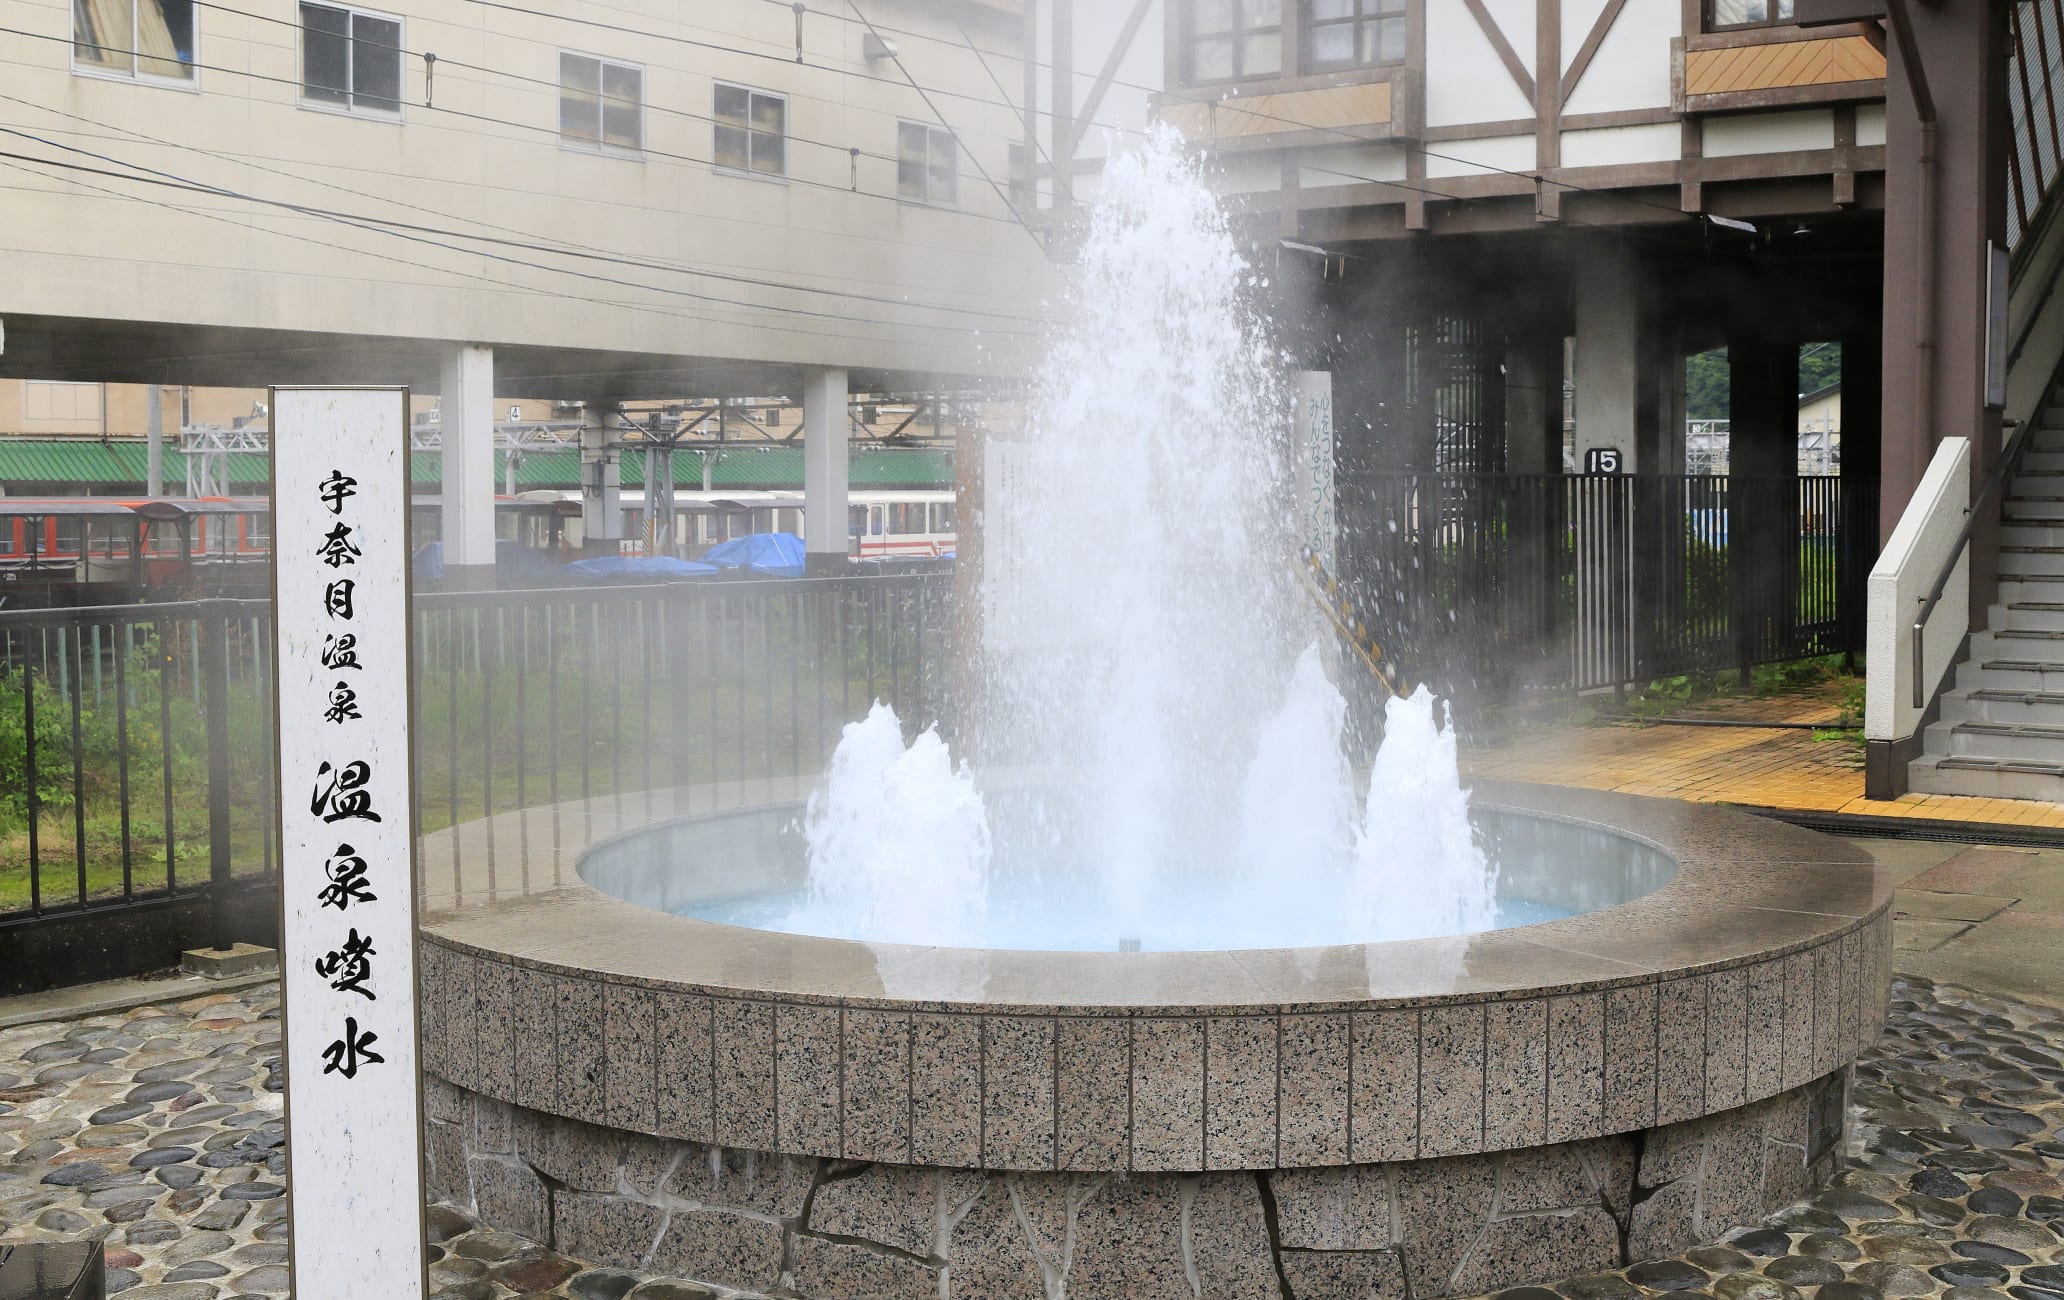 Unazuki-onsen hot springs